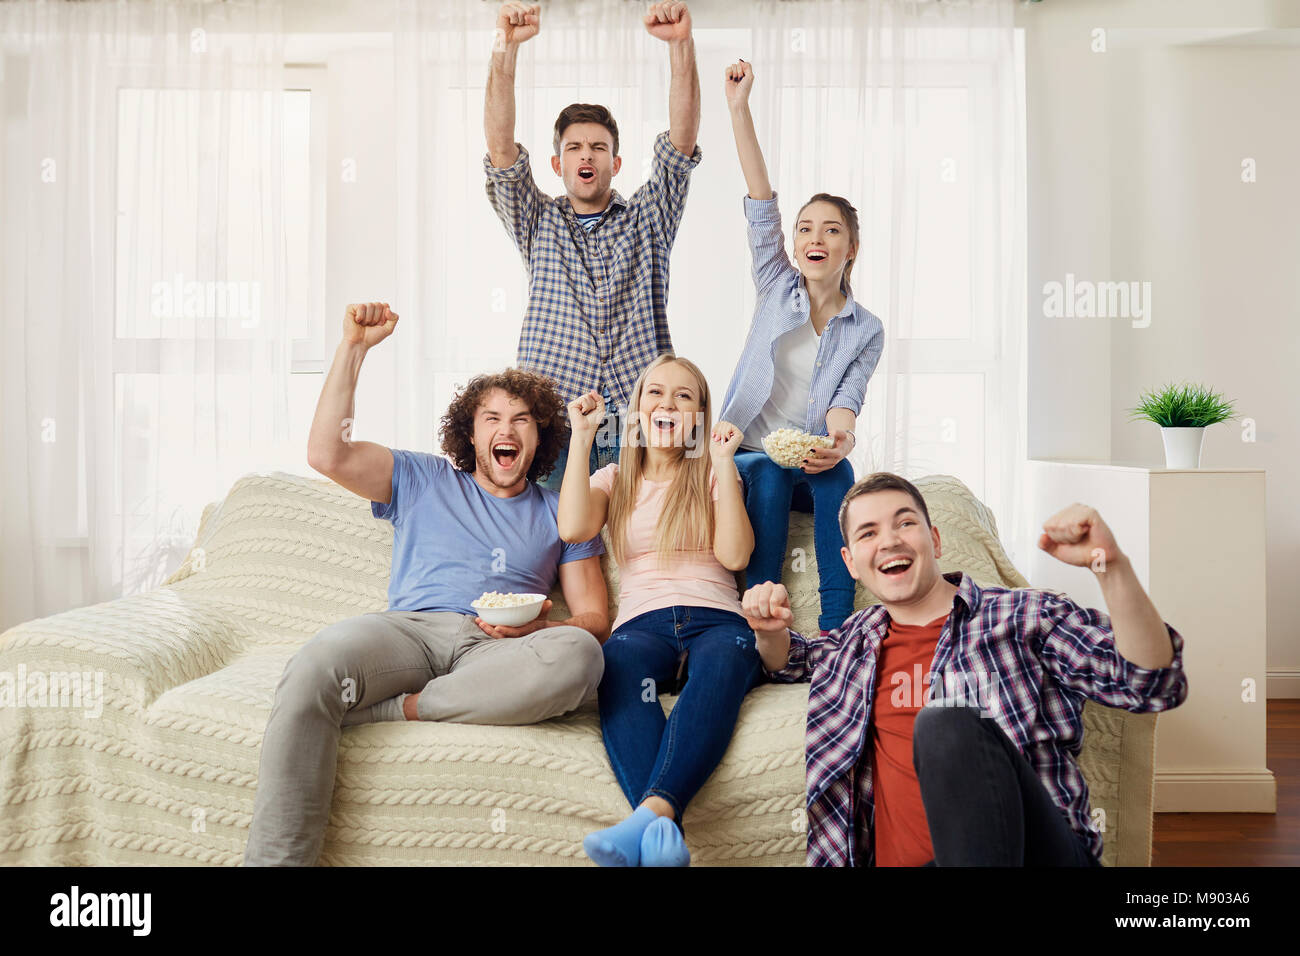 Un groupe d'amis des fans de regarder un sports TV assis sur un sof Banque D'Images